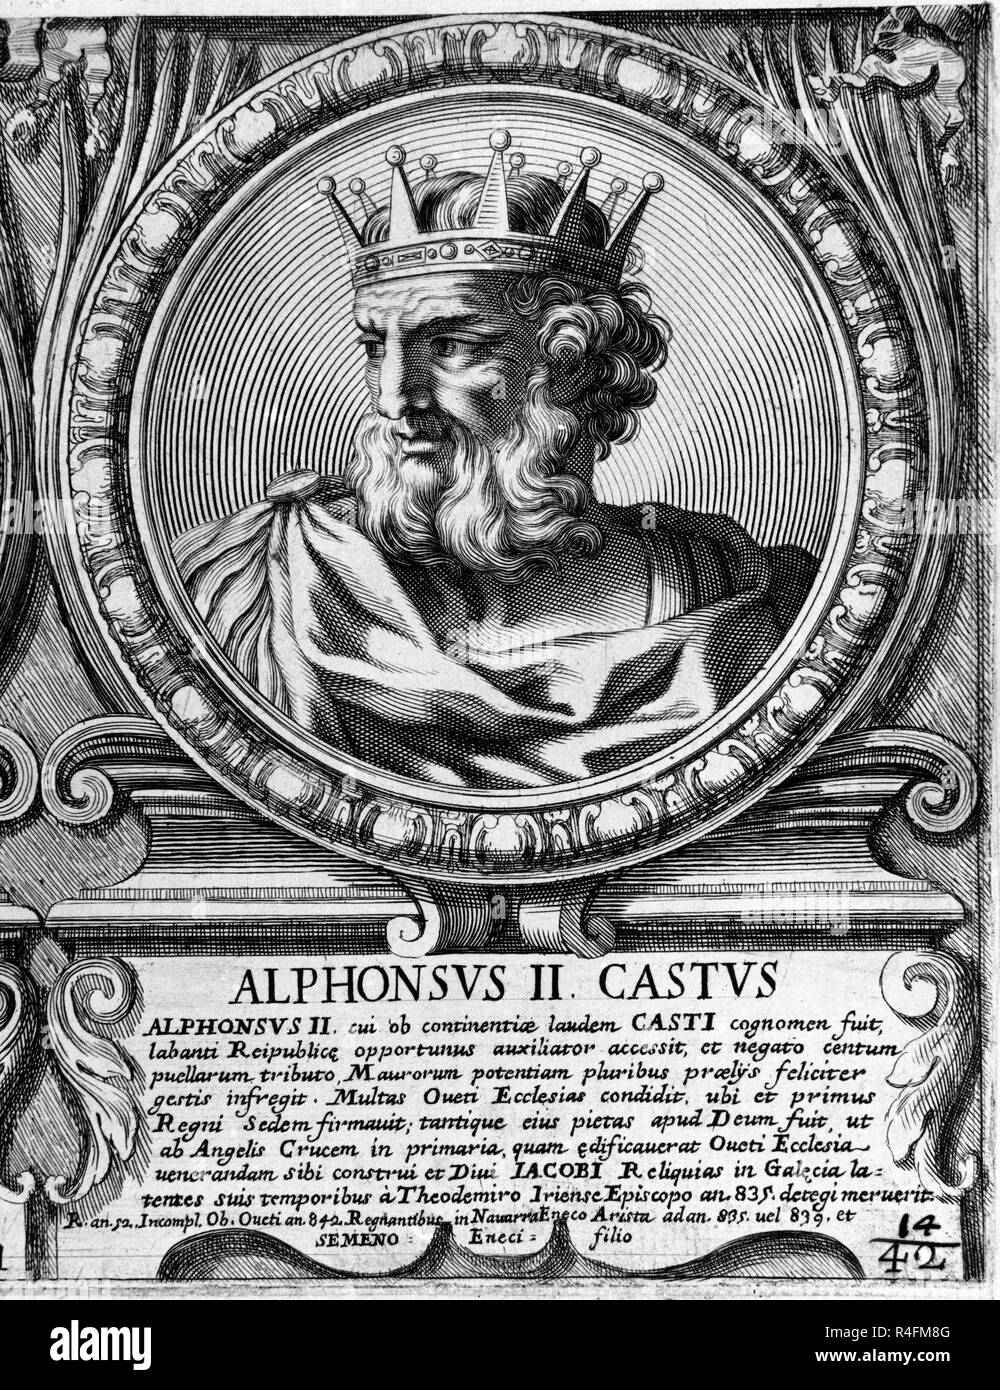 ALFONSO II EL CASTO (759/842) - Rey de Asturias. Posizione: Collezione privata. MADRID. Spagna. Foto Stock